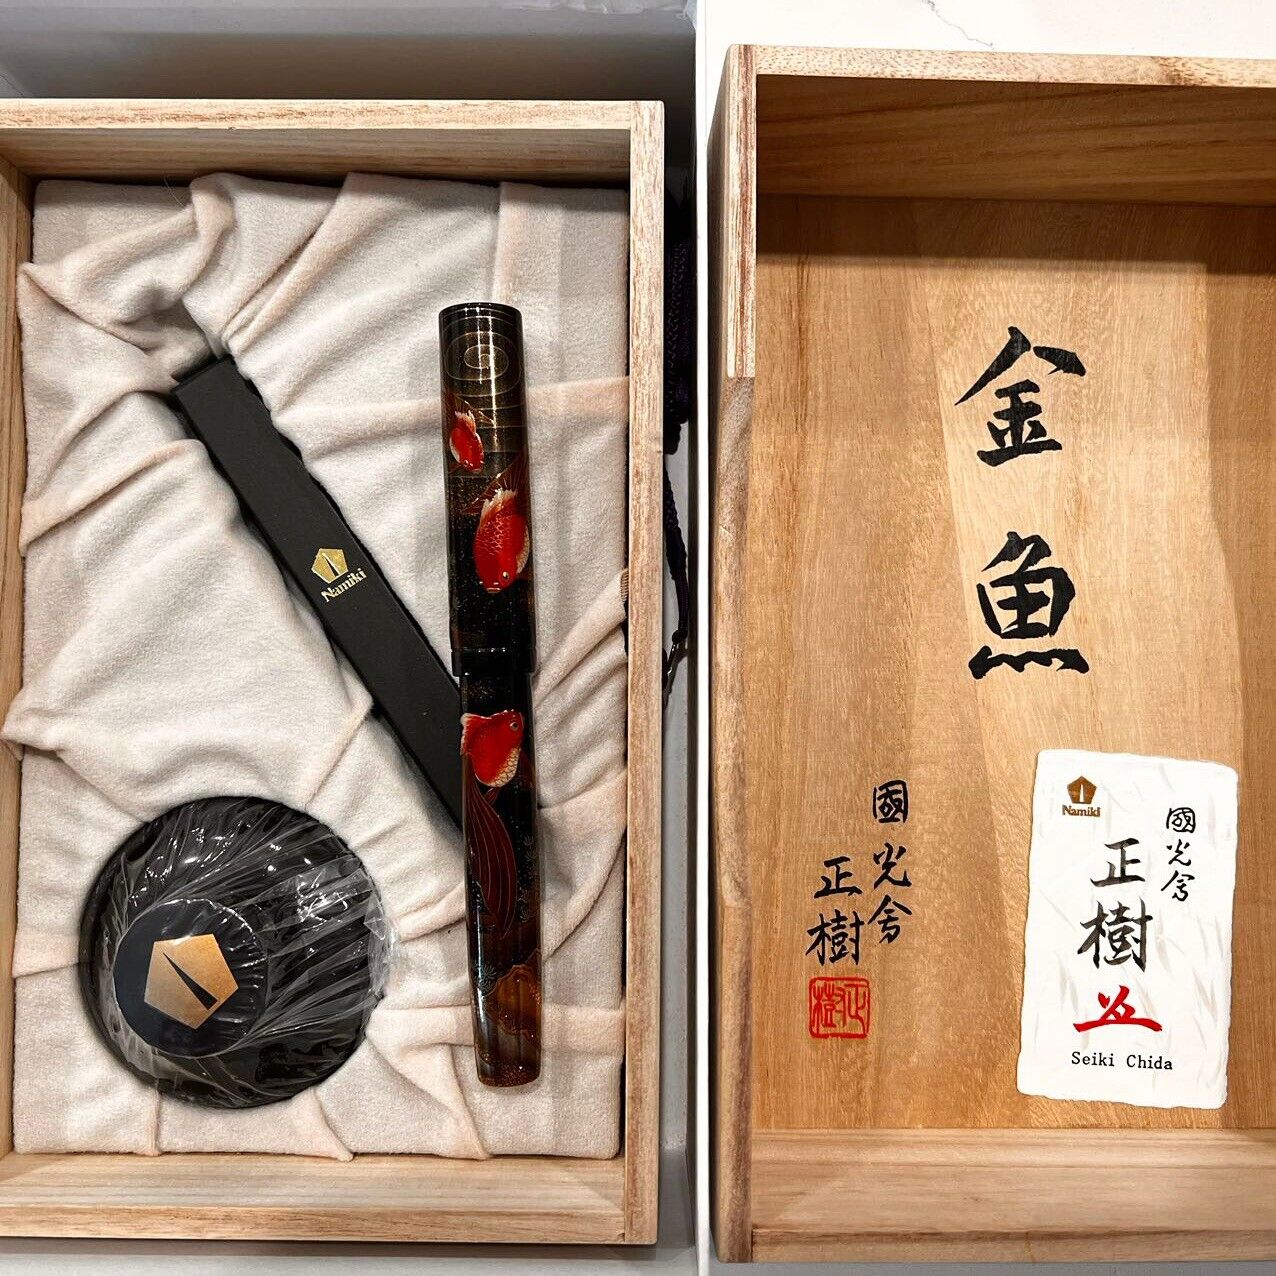 New Namiki Emperor Goldfish Fountain Pen - Sealed In Box. Medium Nib